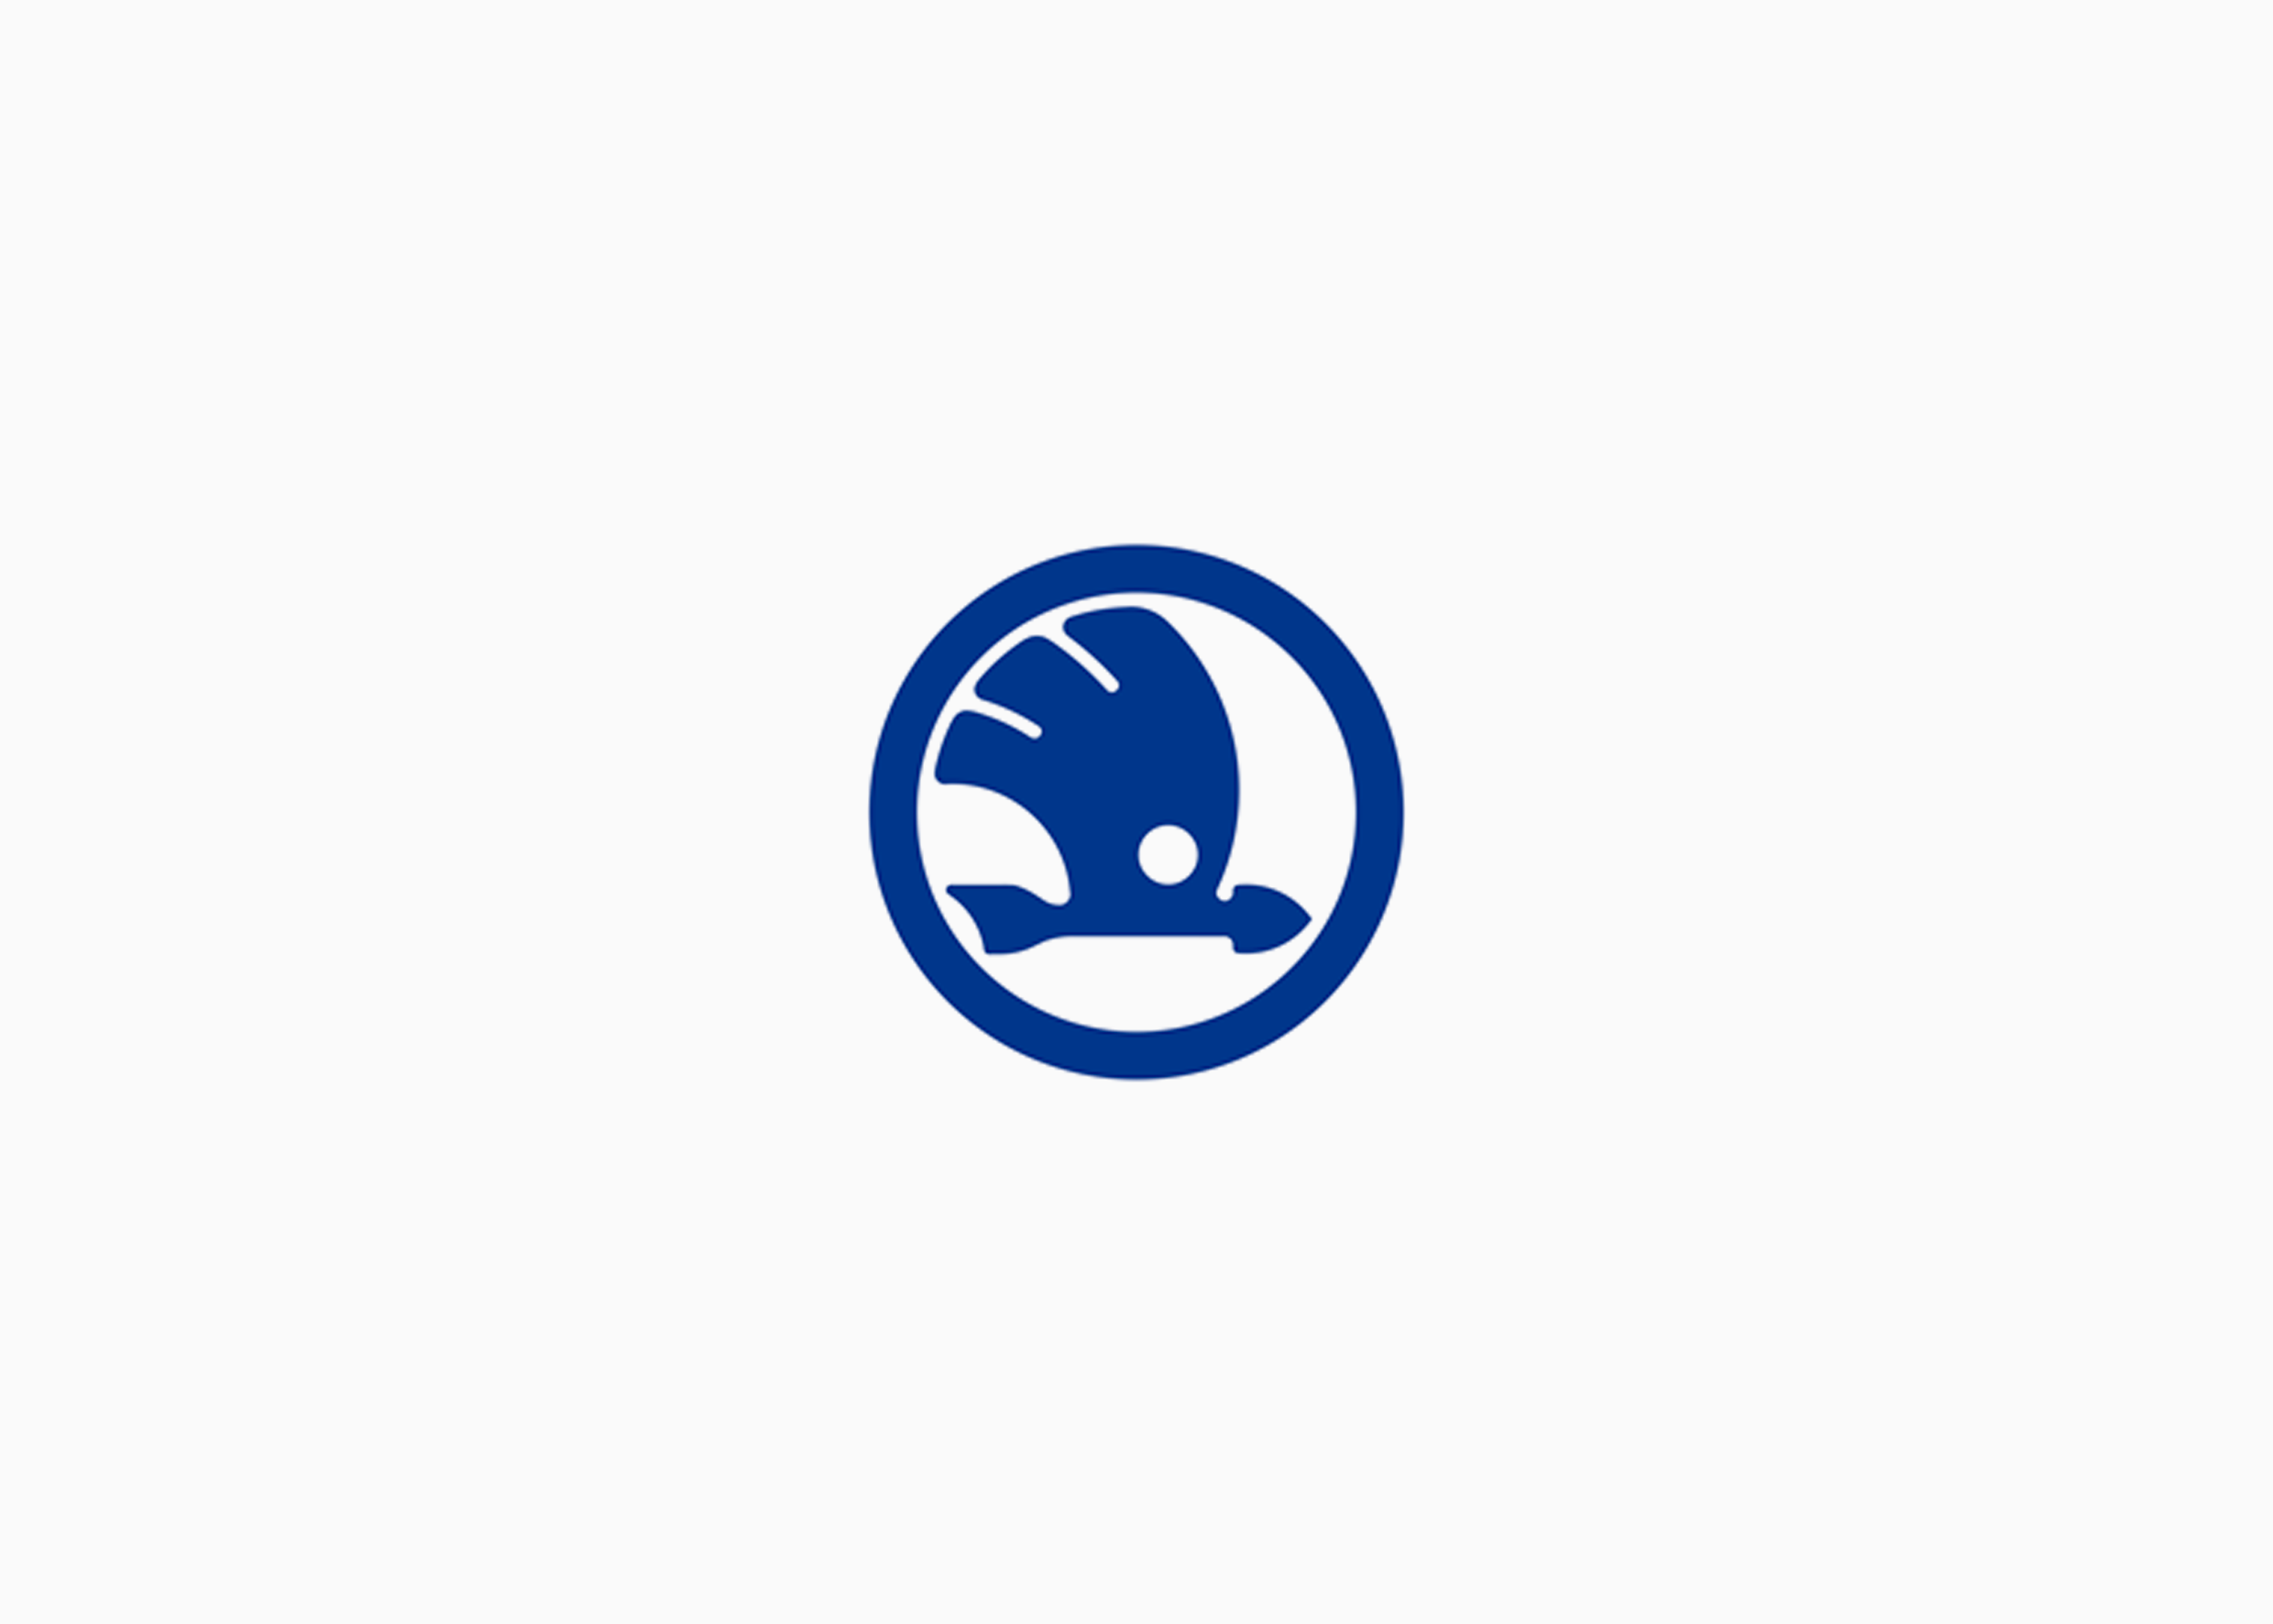 Логотип Шкода